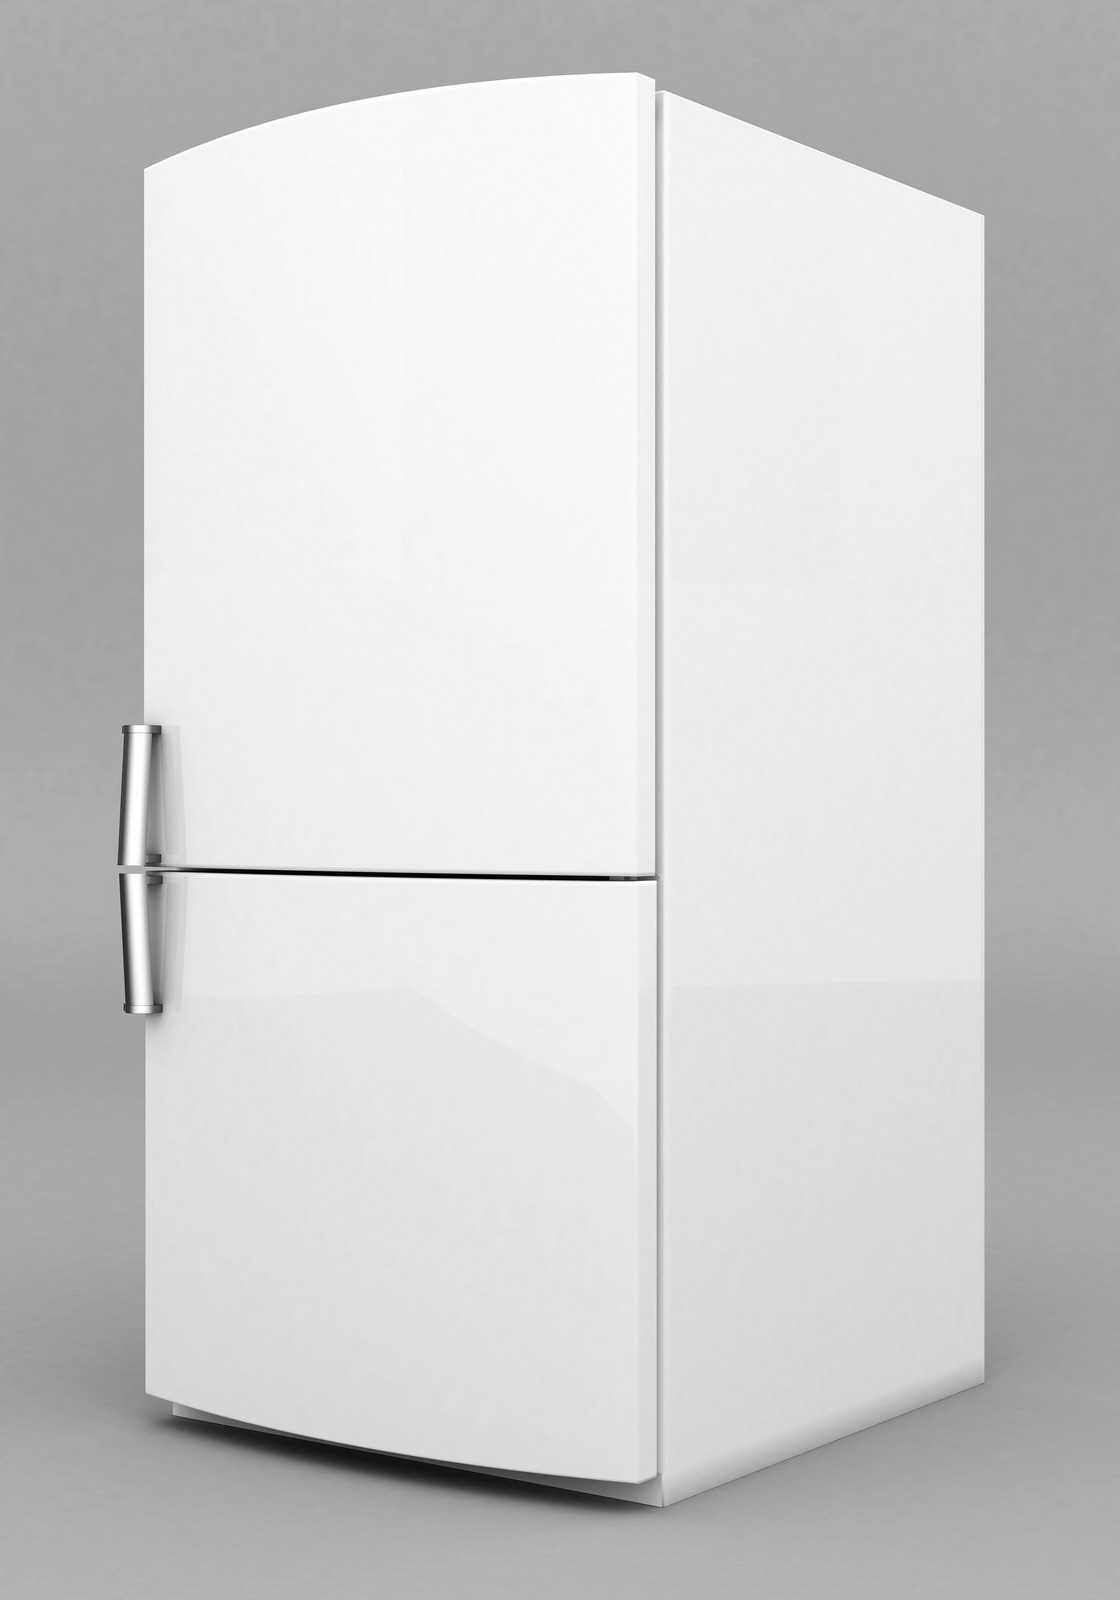 A white bottom-freezer refrigerator